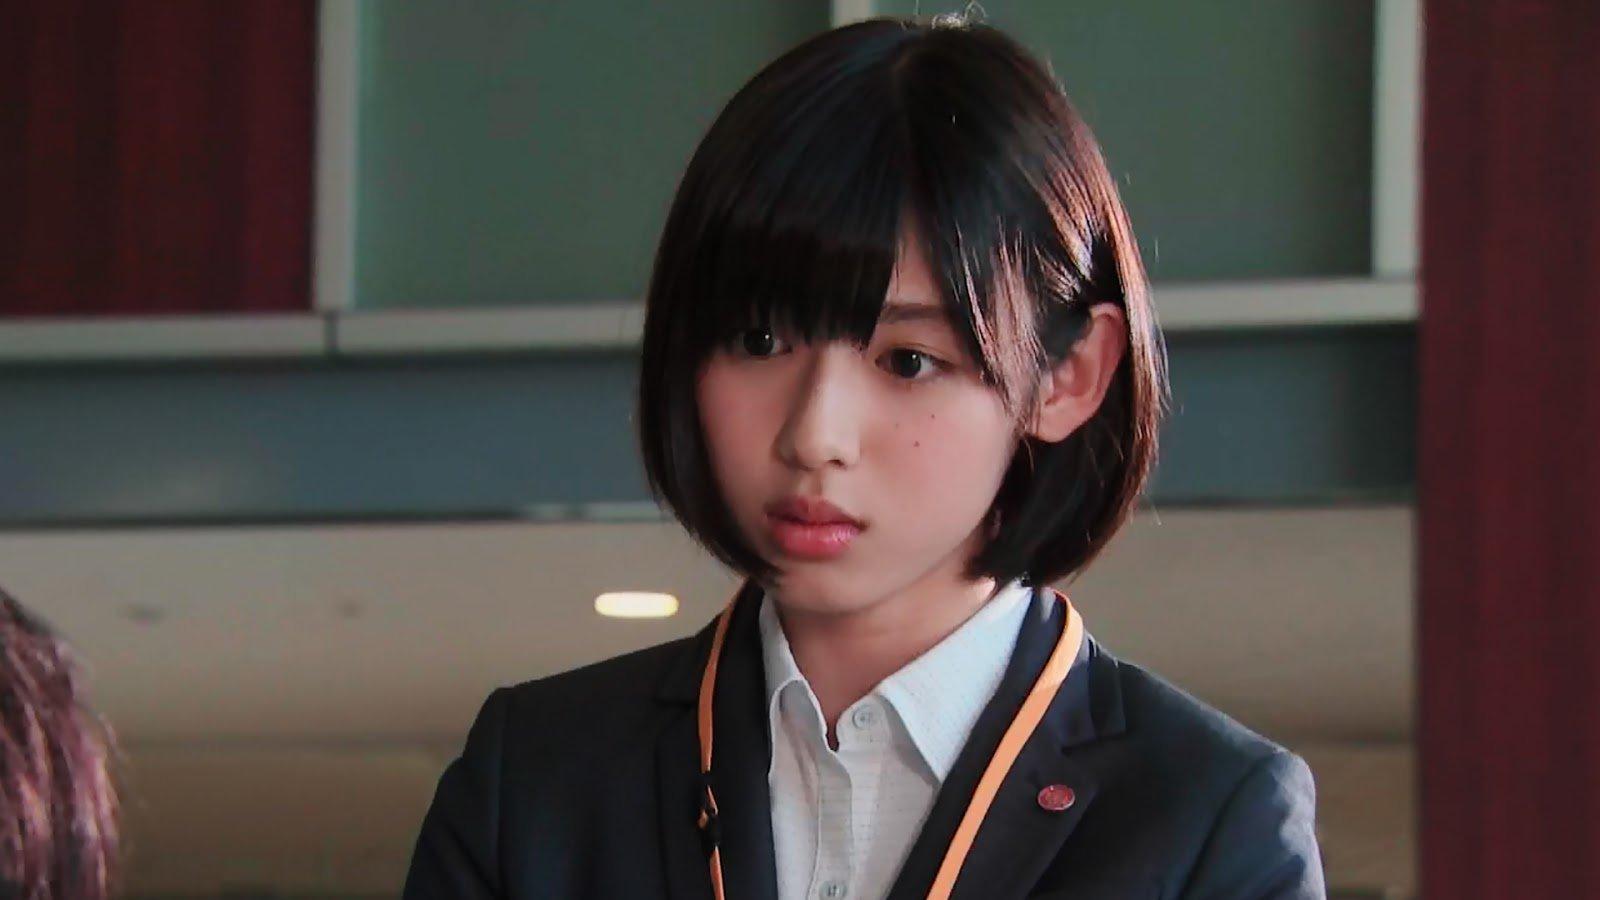 Shiraishi Sei đứng hạng 4 trong top 10 nữ diễn viên mặc đồng phục học sinh đẹp nhất Nhật Bản với 237 phiếu bình chọn của fans. Ngôi sao sinh năm 1998 là gương mặt đang lên ở mảng điện ảnh. (Nguồn: Internet)